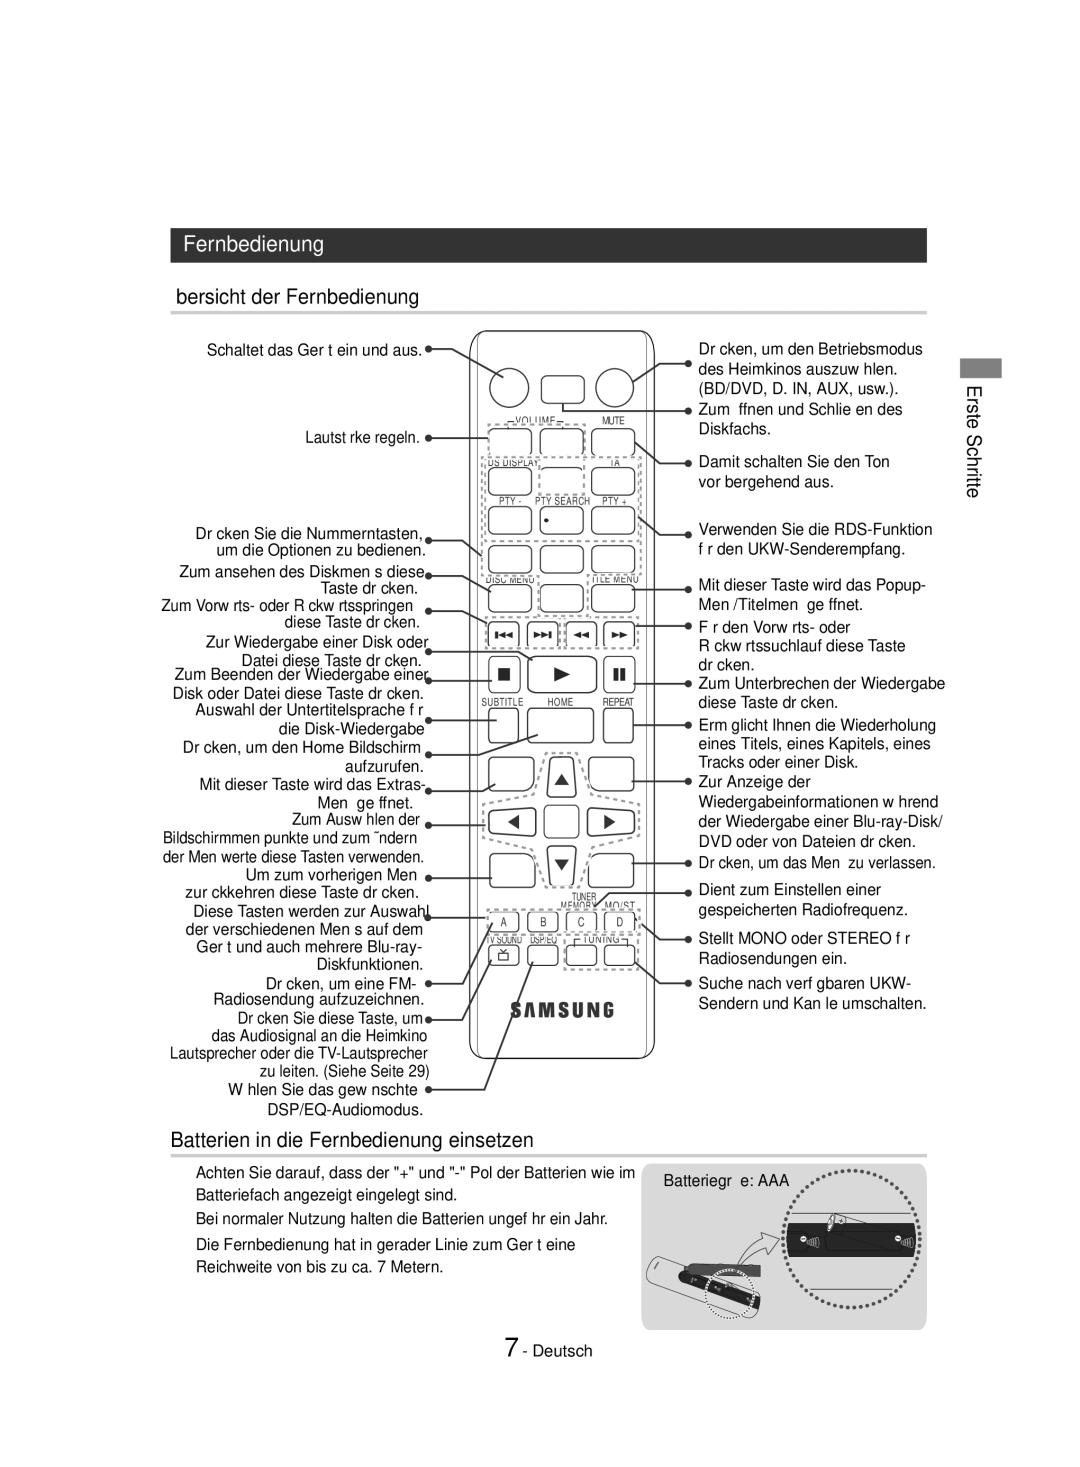 Samsung HT-J4530/EN, HT-J4550/EN, HT-J4500/EN Übersicht der Fernbedienung, Batterien in die Fernbedienung einsetzen 